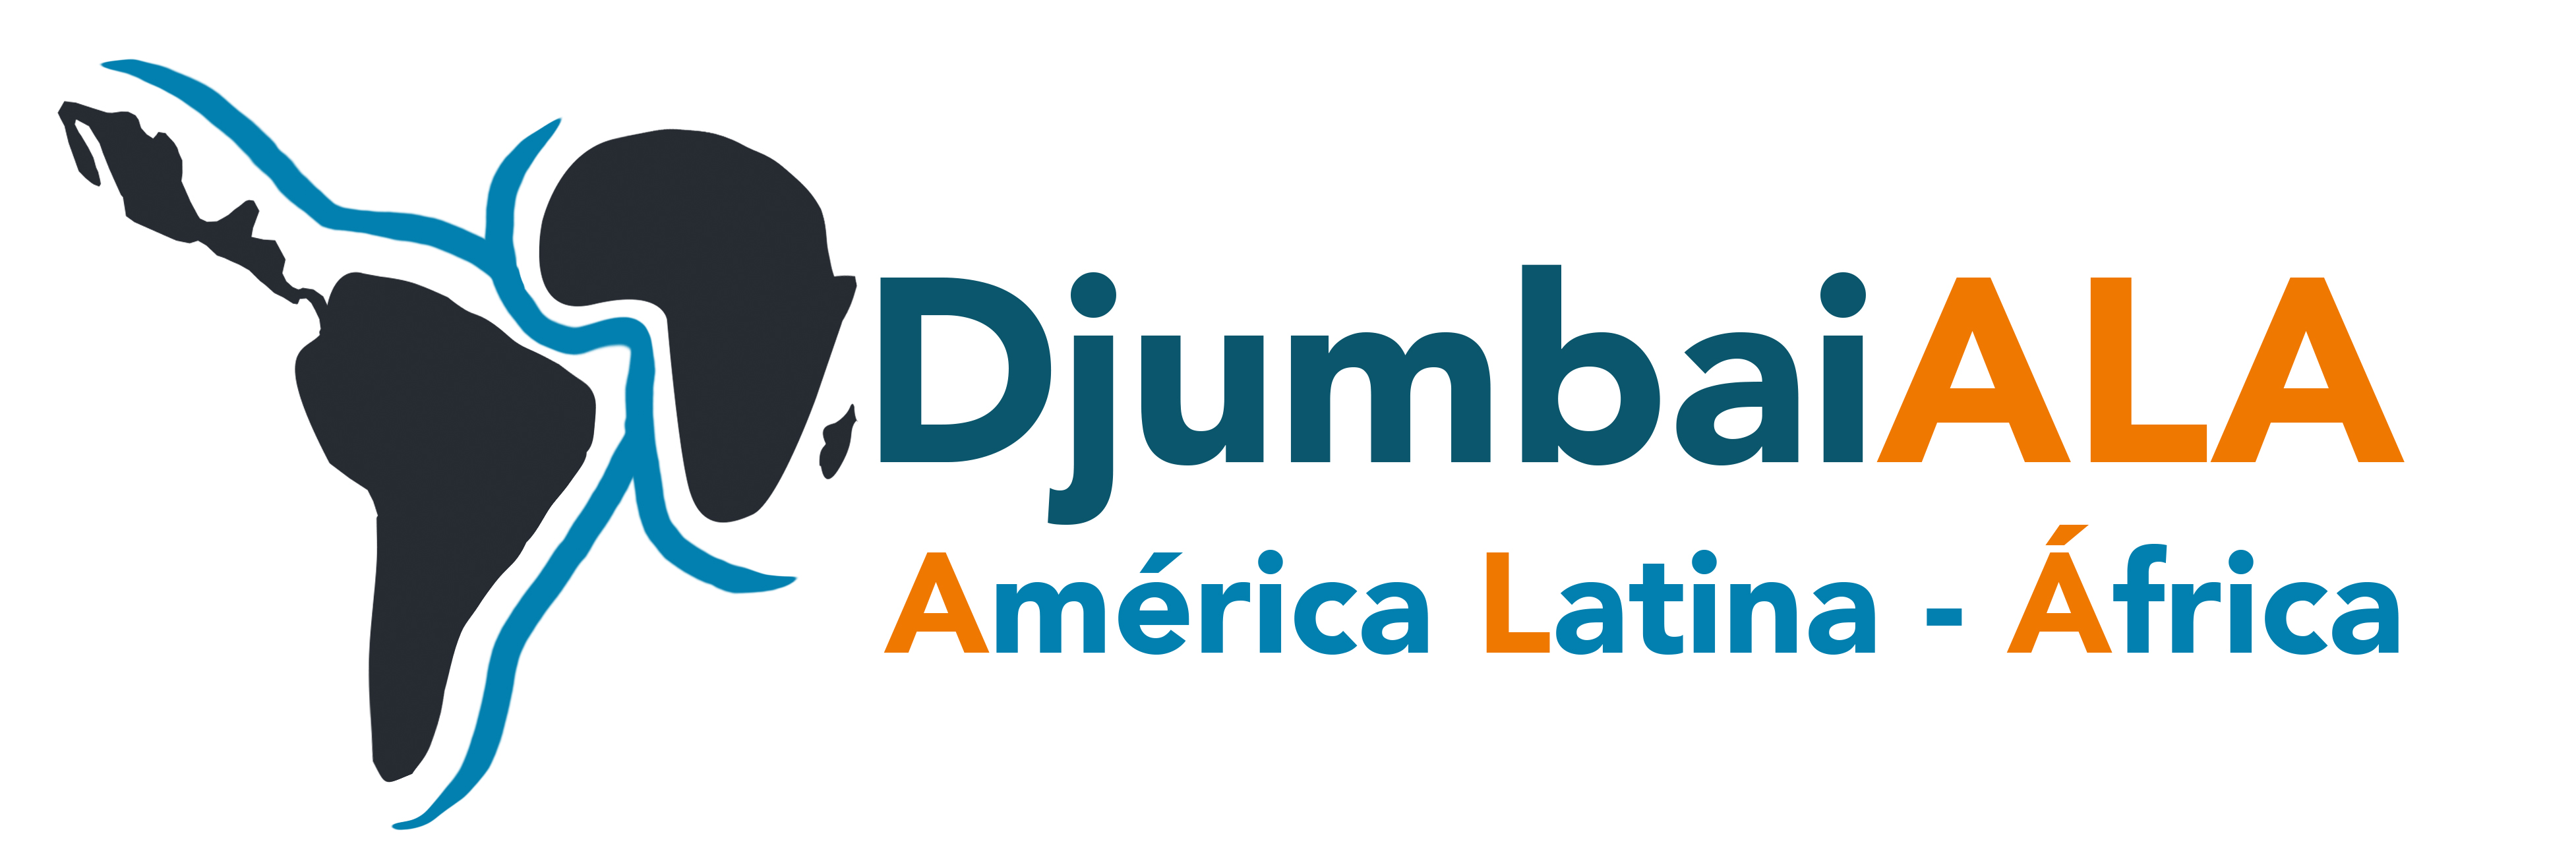 Djumbaiala Logo